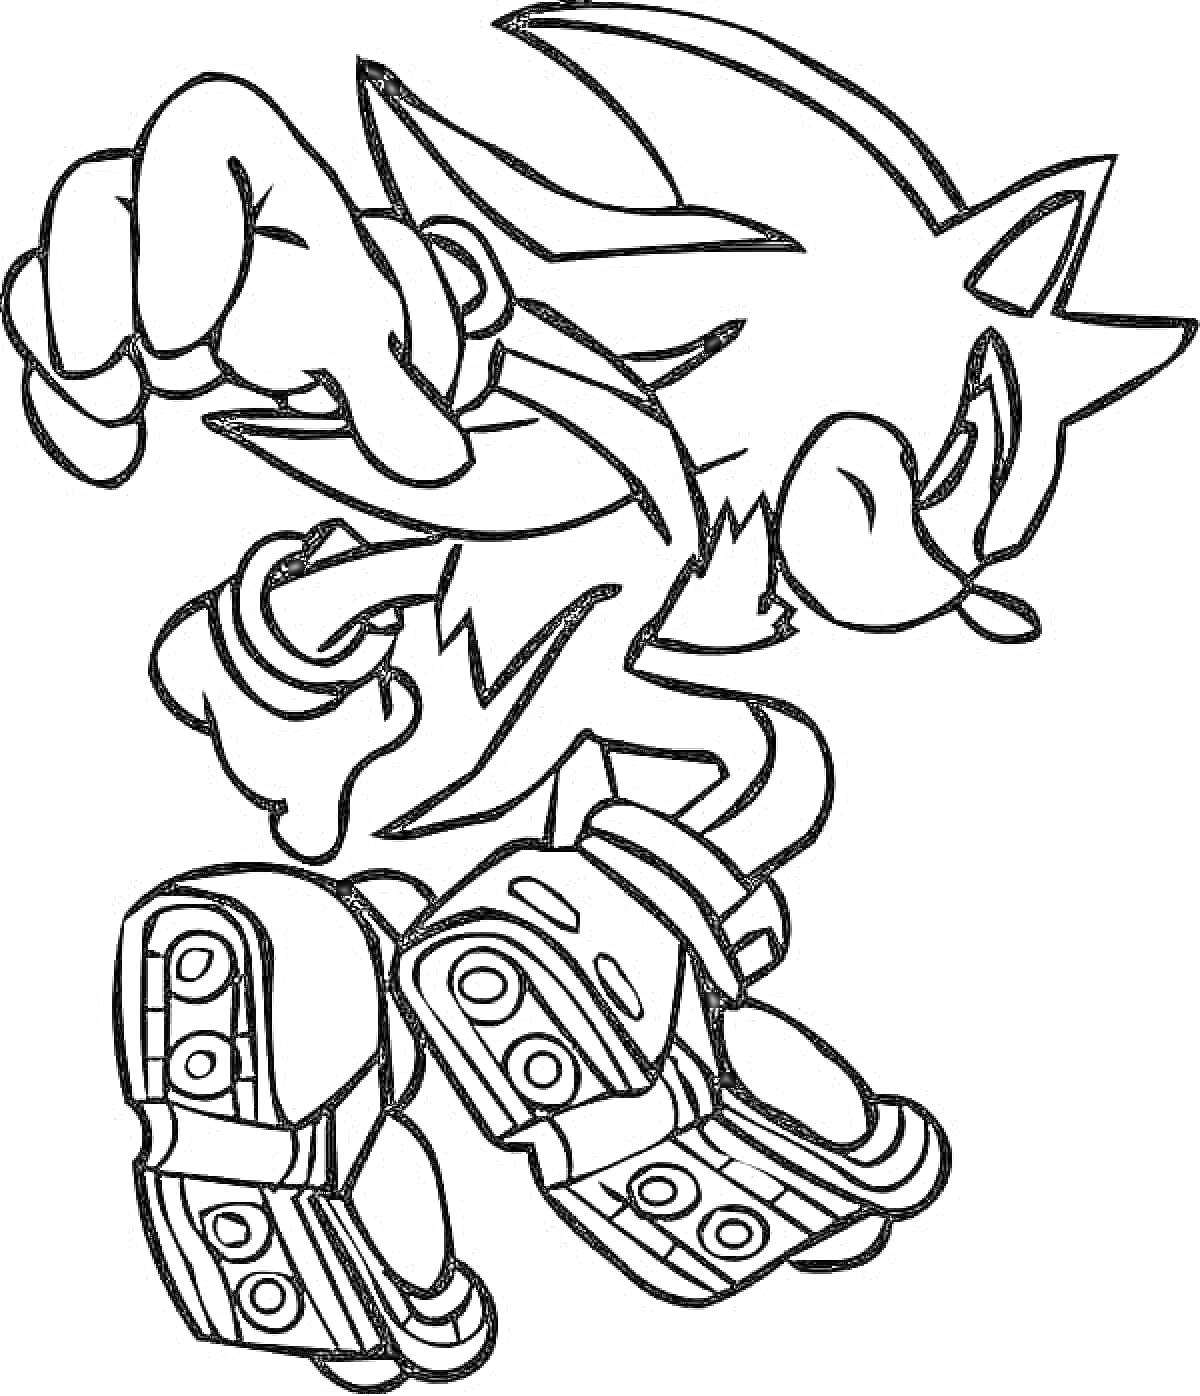 Раскраска Соник Шэдоу на скачке с вытянутой рукой и согнутой ногой, большие ботинки с ремешками